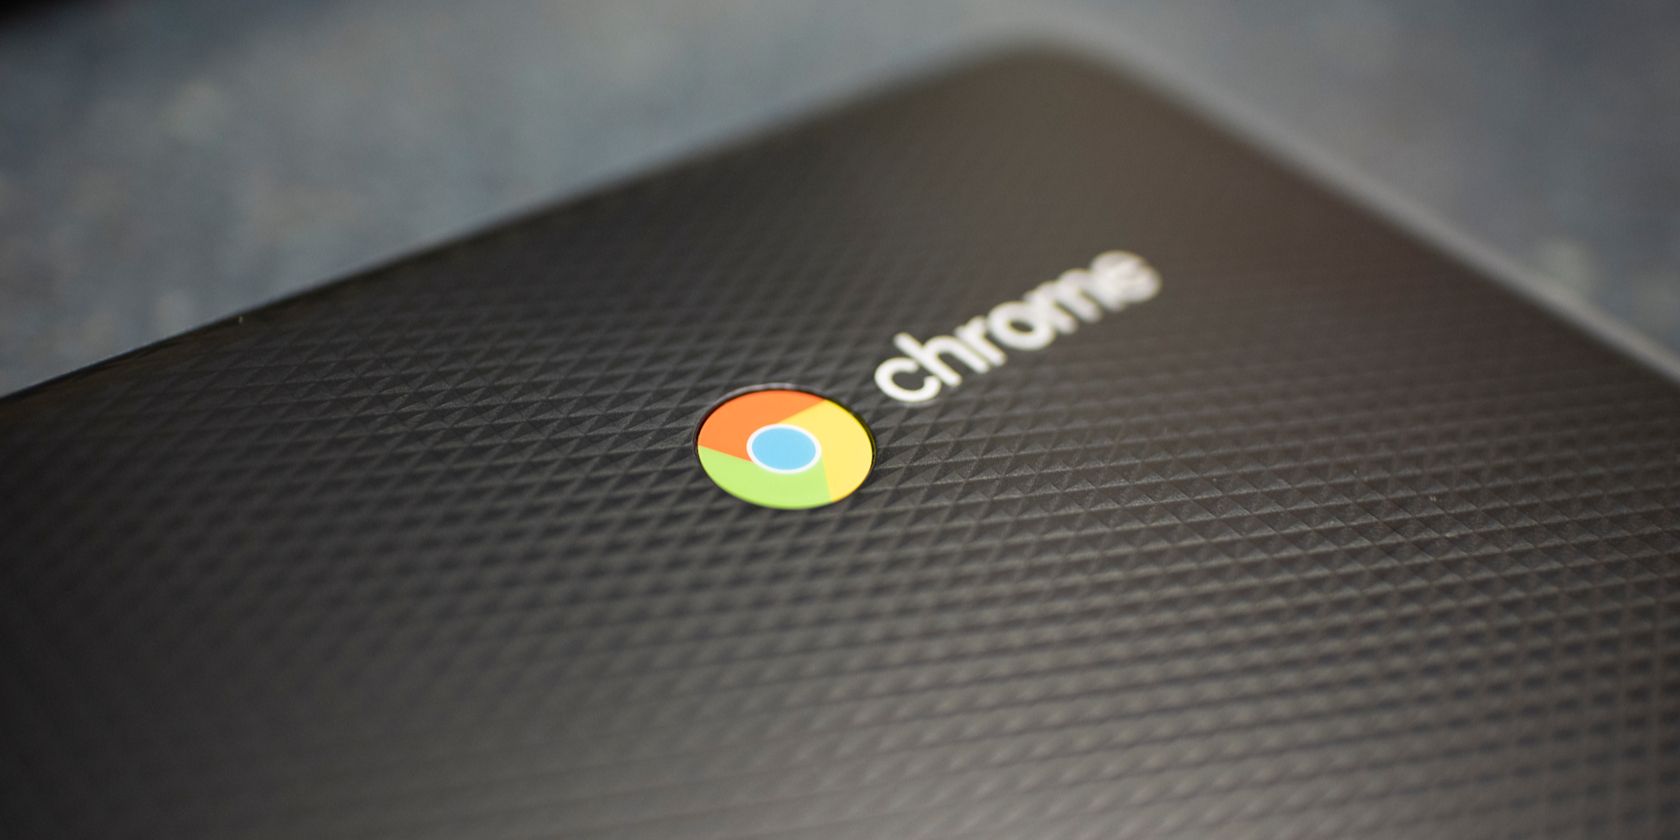 Chrome logo on a Chromebook laptop